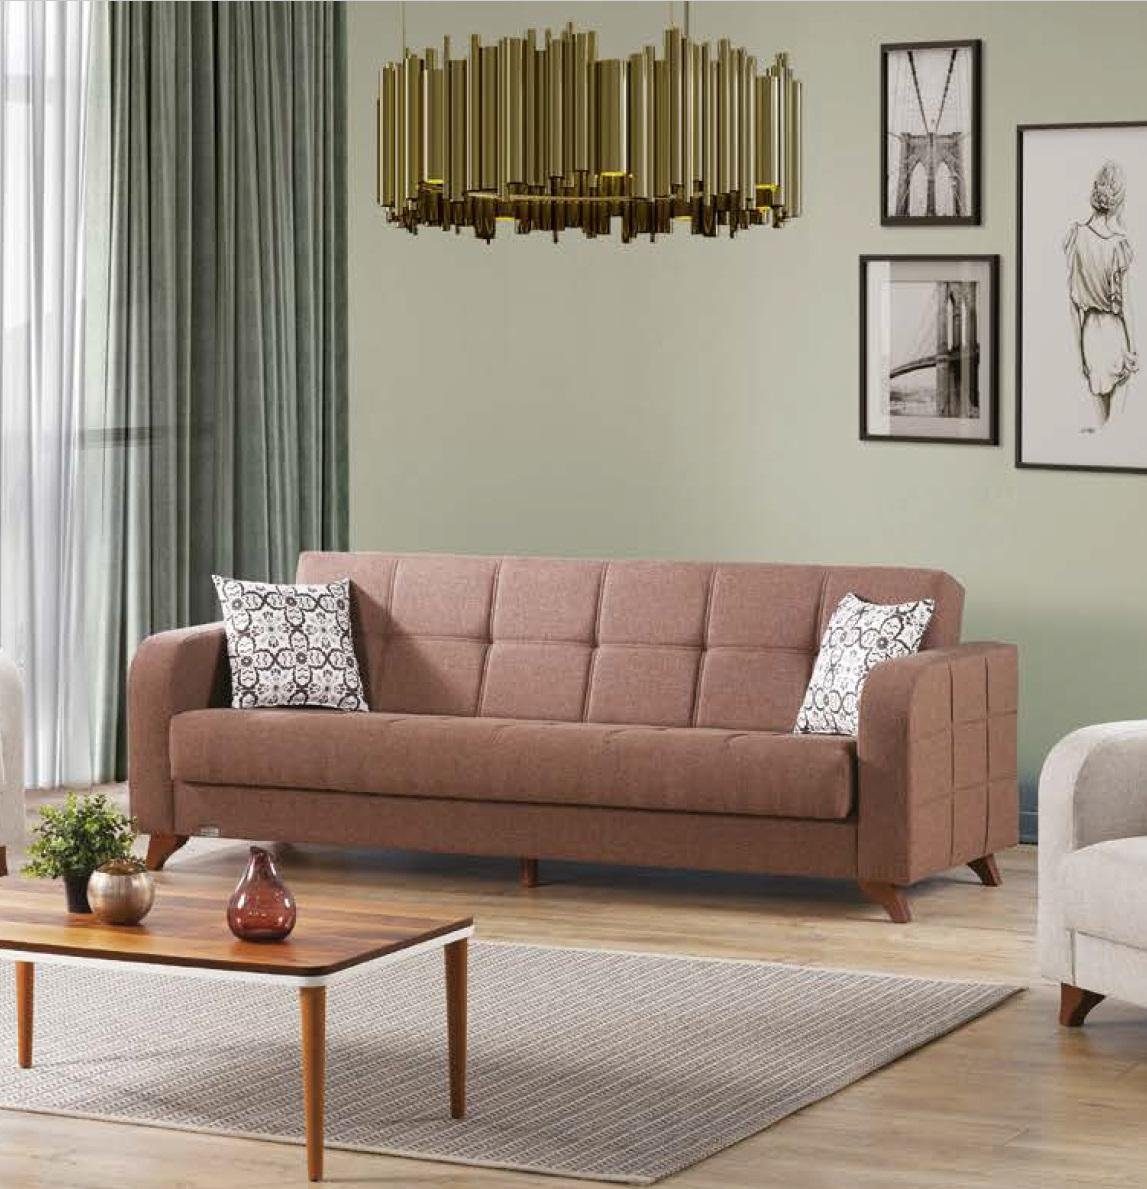 Sofa Couch Möbel 3 Luxus JVmoebel Sofas Moderner Couchen Sofa Stoff Luxus Sitzer